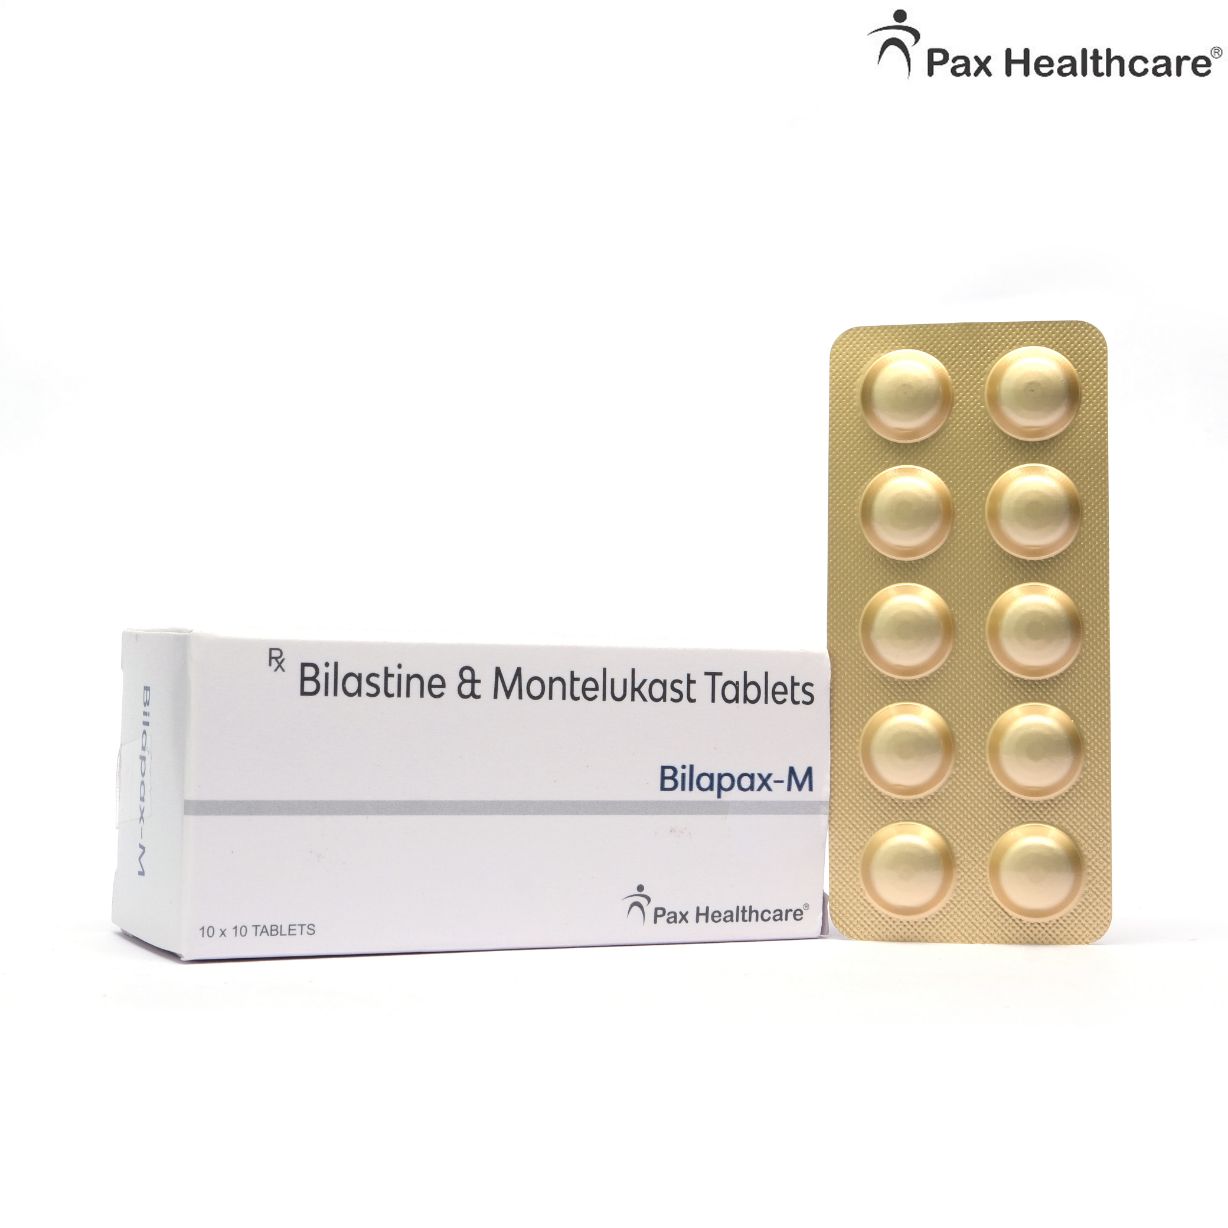 Bilastine & Montelukast Tablets